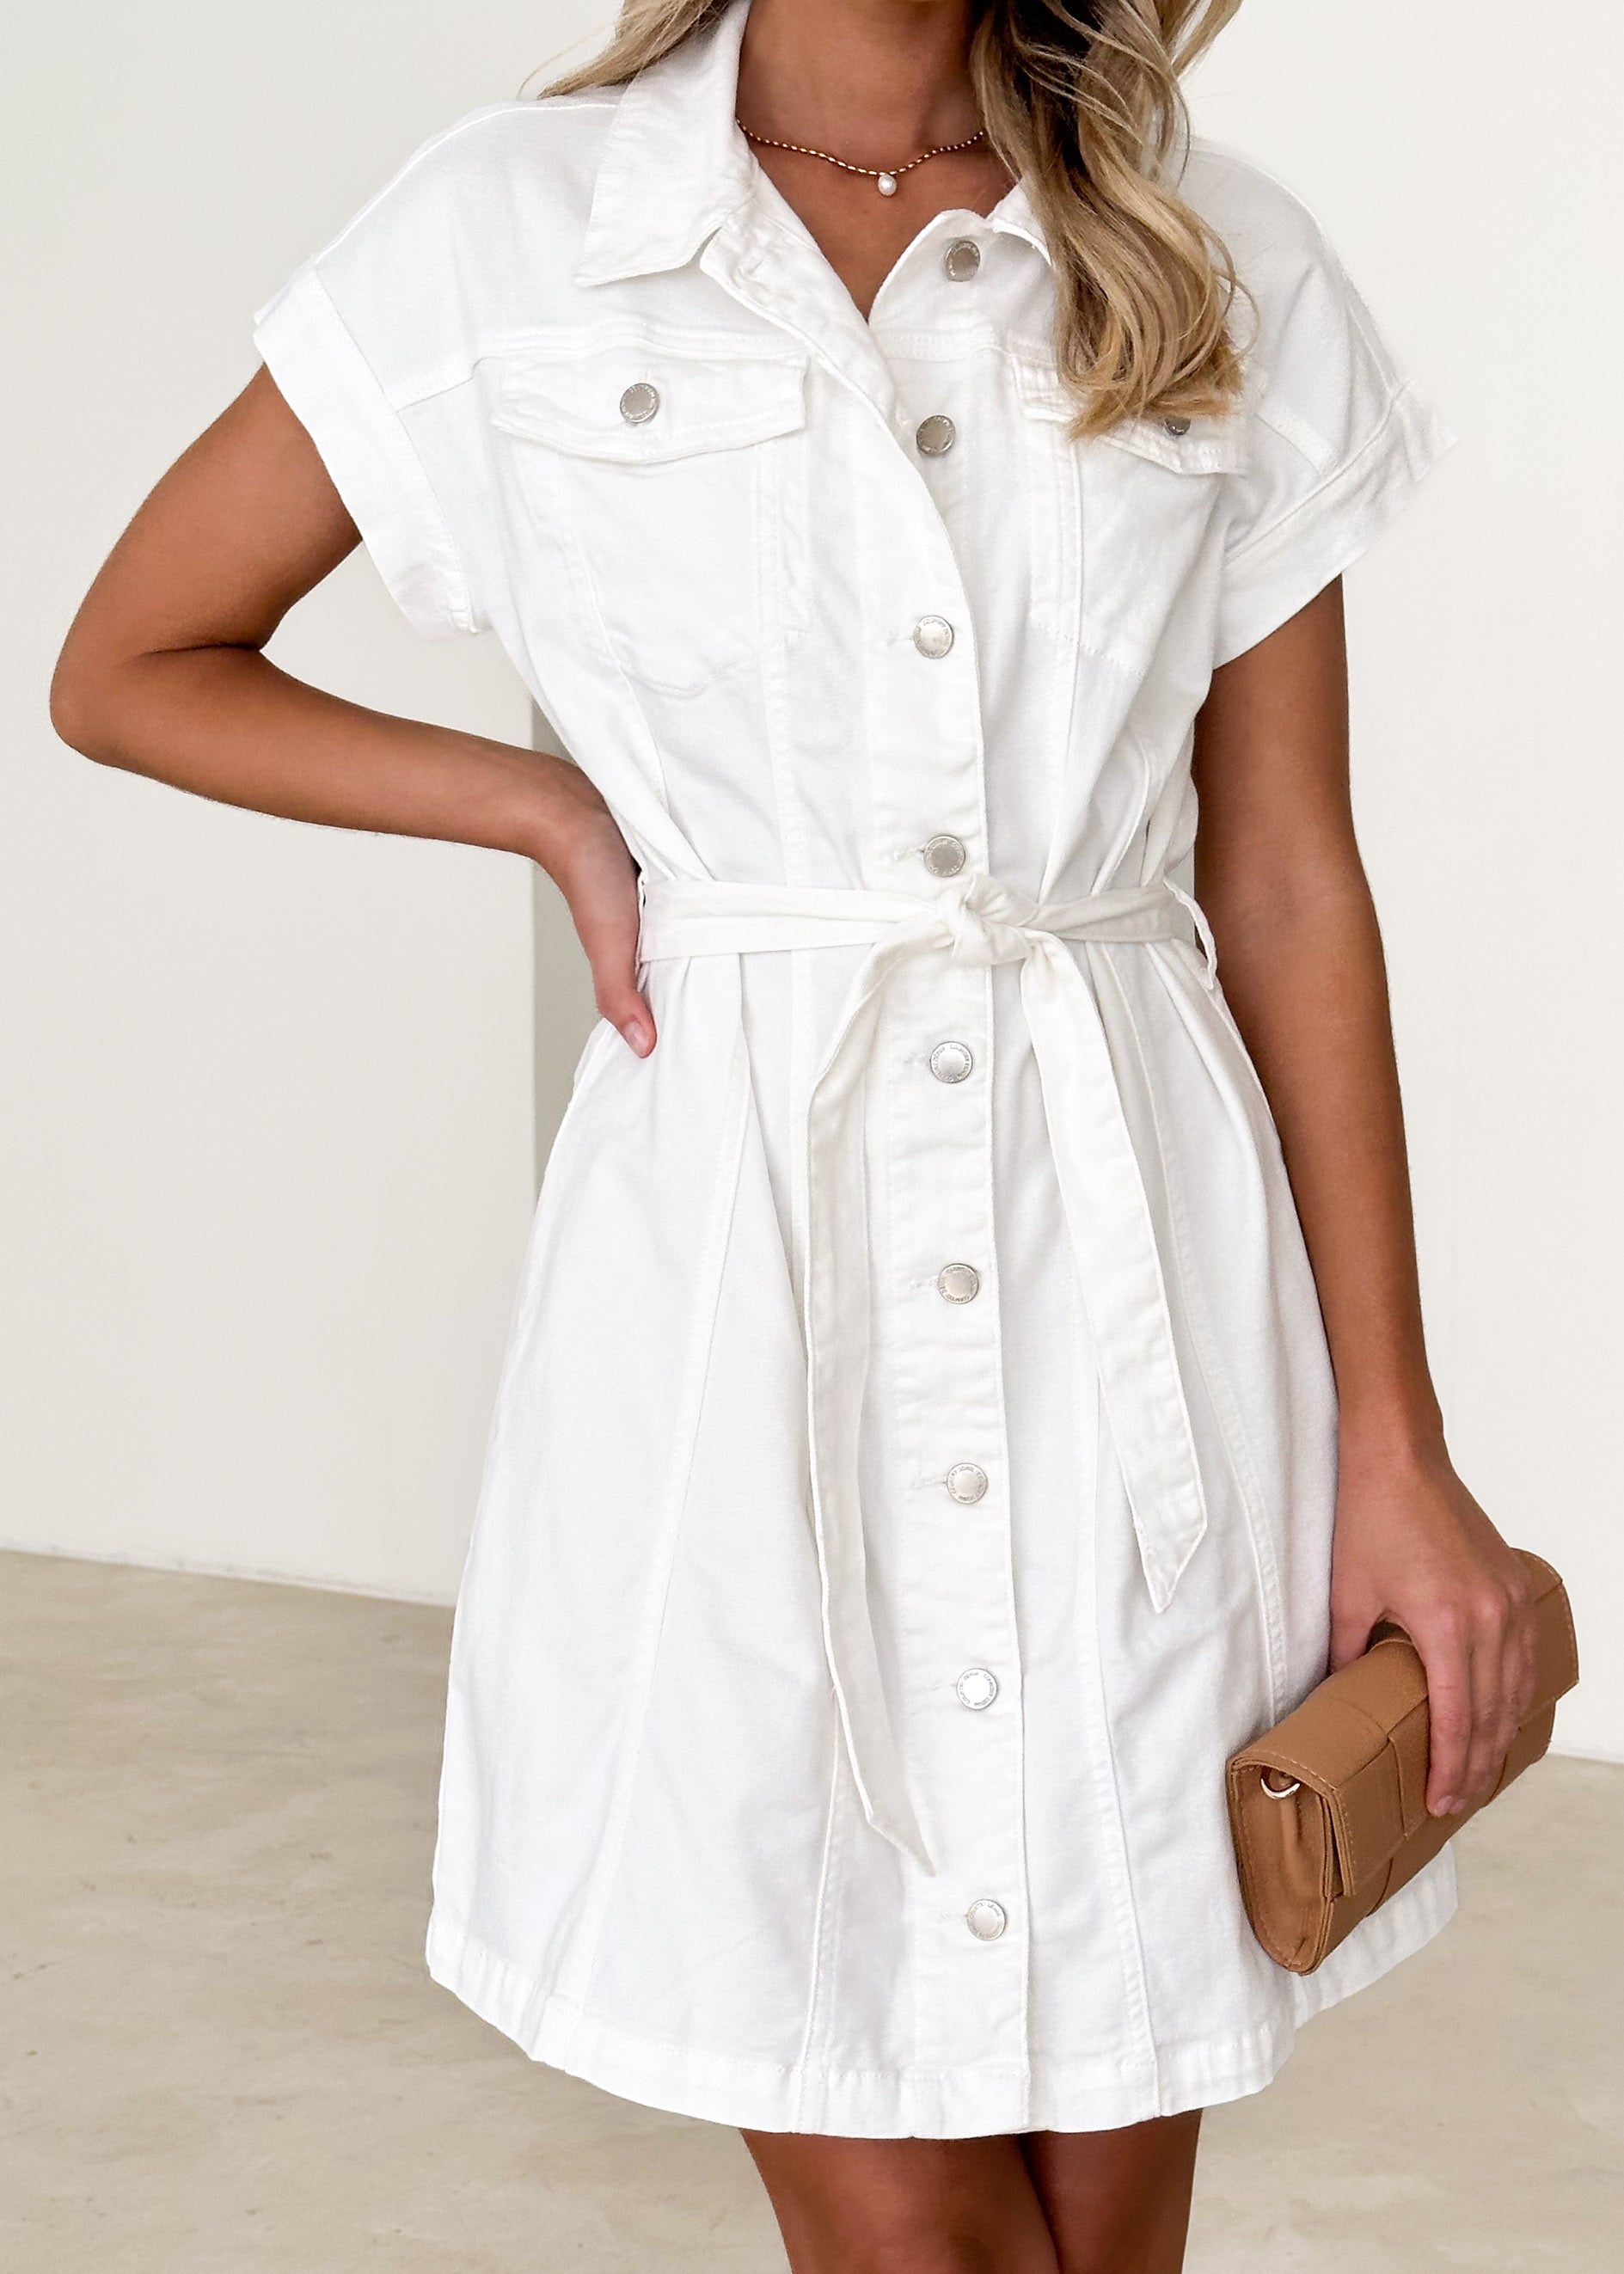 Flumie Denim Dress - Off White